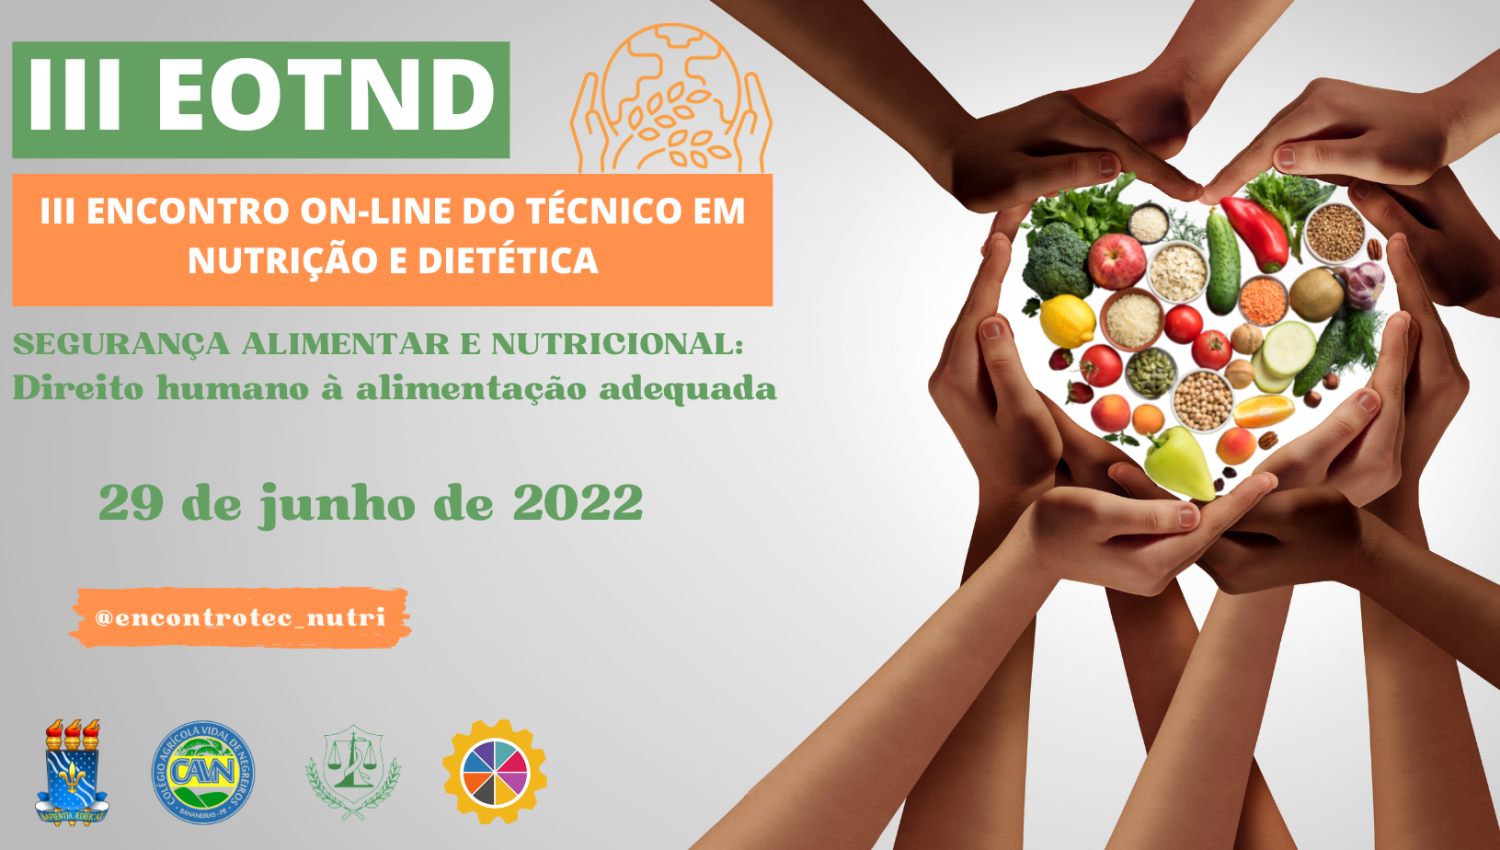 III ENCONTRO ON-LINE DO TÉCNICO EM NUTRIÇÃO E DIETÉTICA (3)